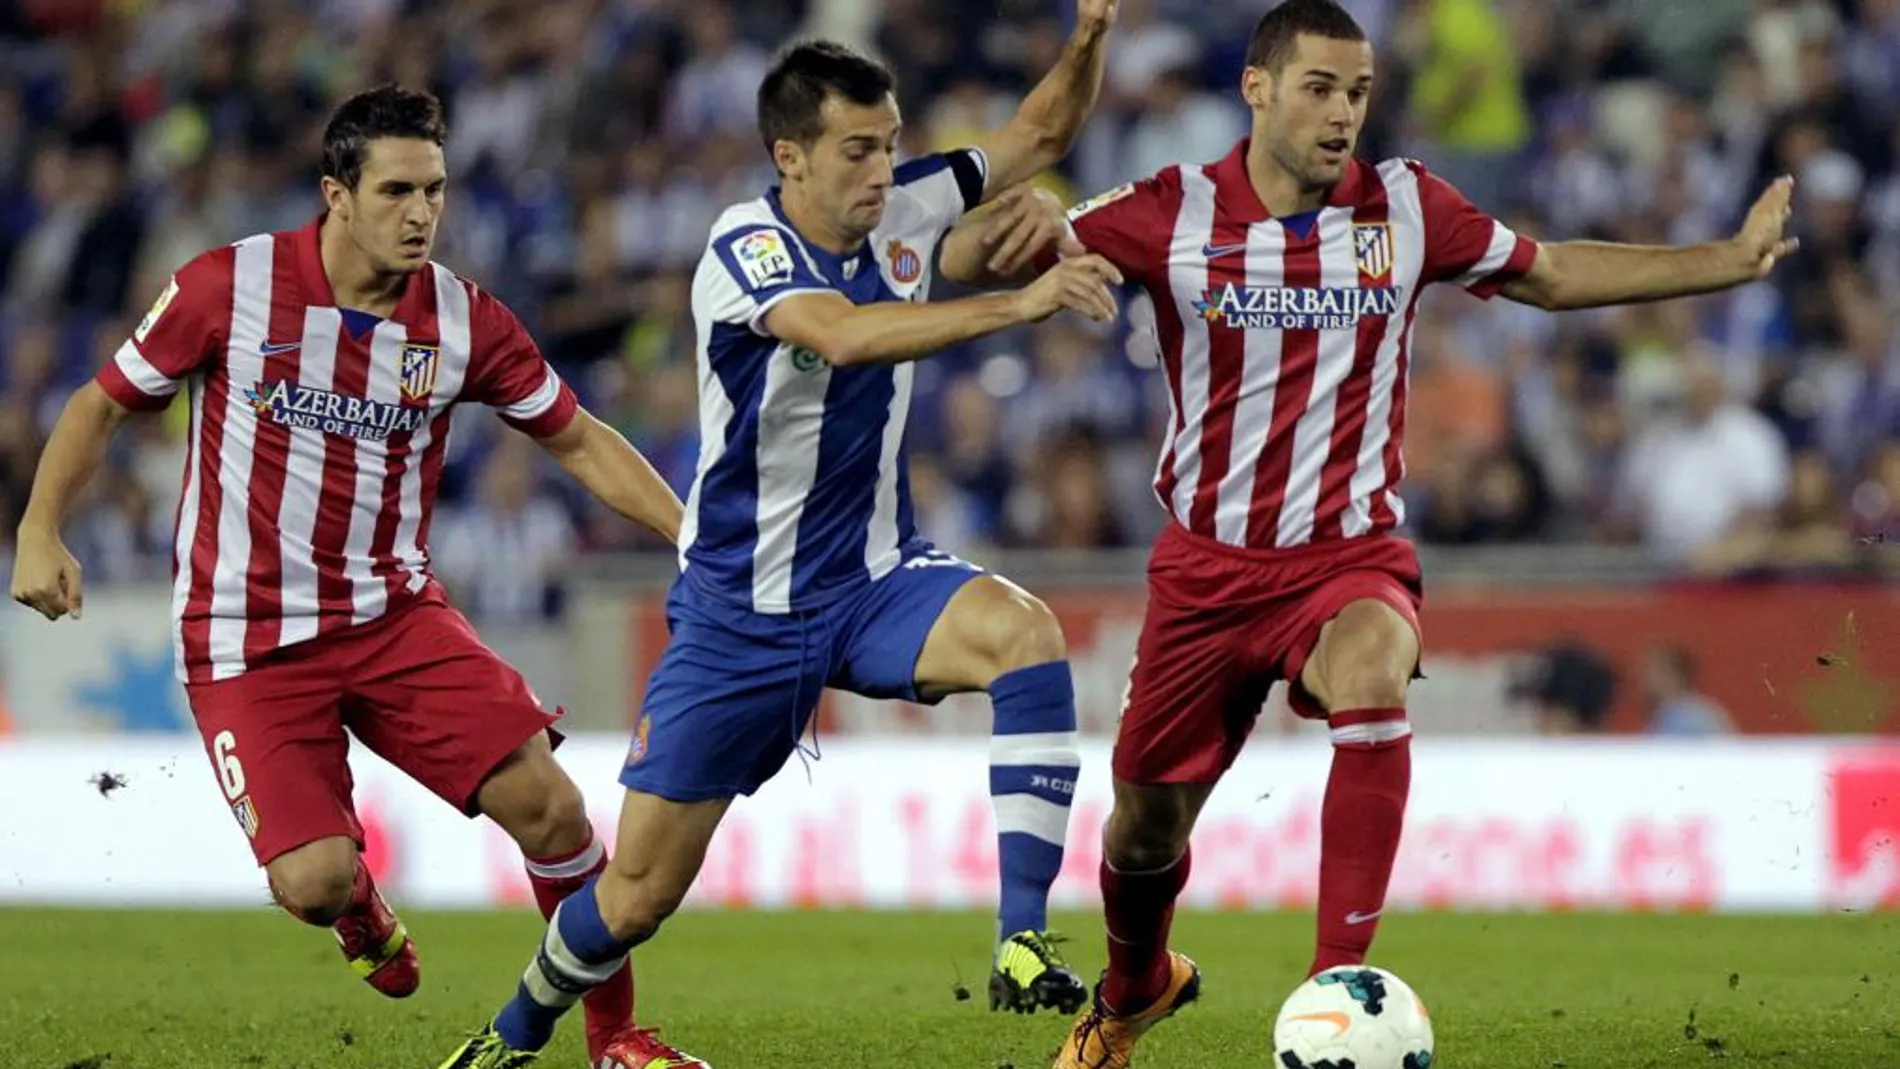 El centrocampista del Espanyol Manuel Lanzarote (c) y los jugadores del Atlético de Madrid "Koke"y Tobias Albertine luchan por el balón